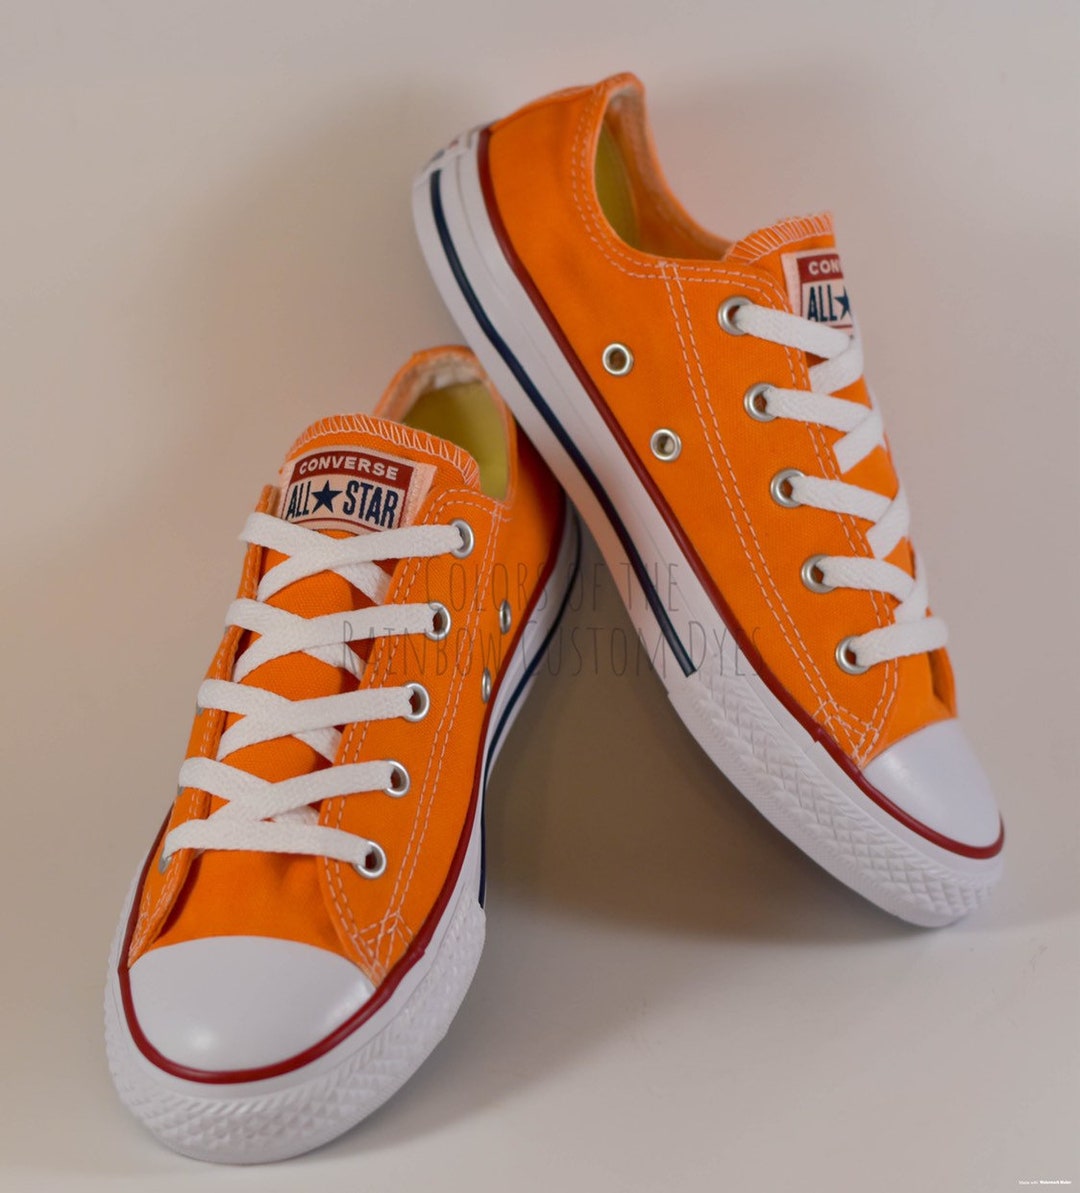 Hæl Høj eksponering slack Custom Dyed Solid Bright Orange Converse All Star Low Top - Etsy